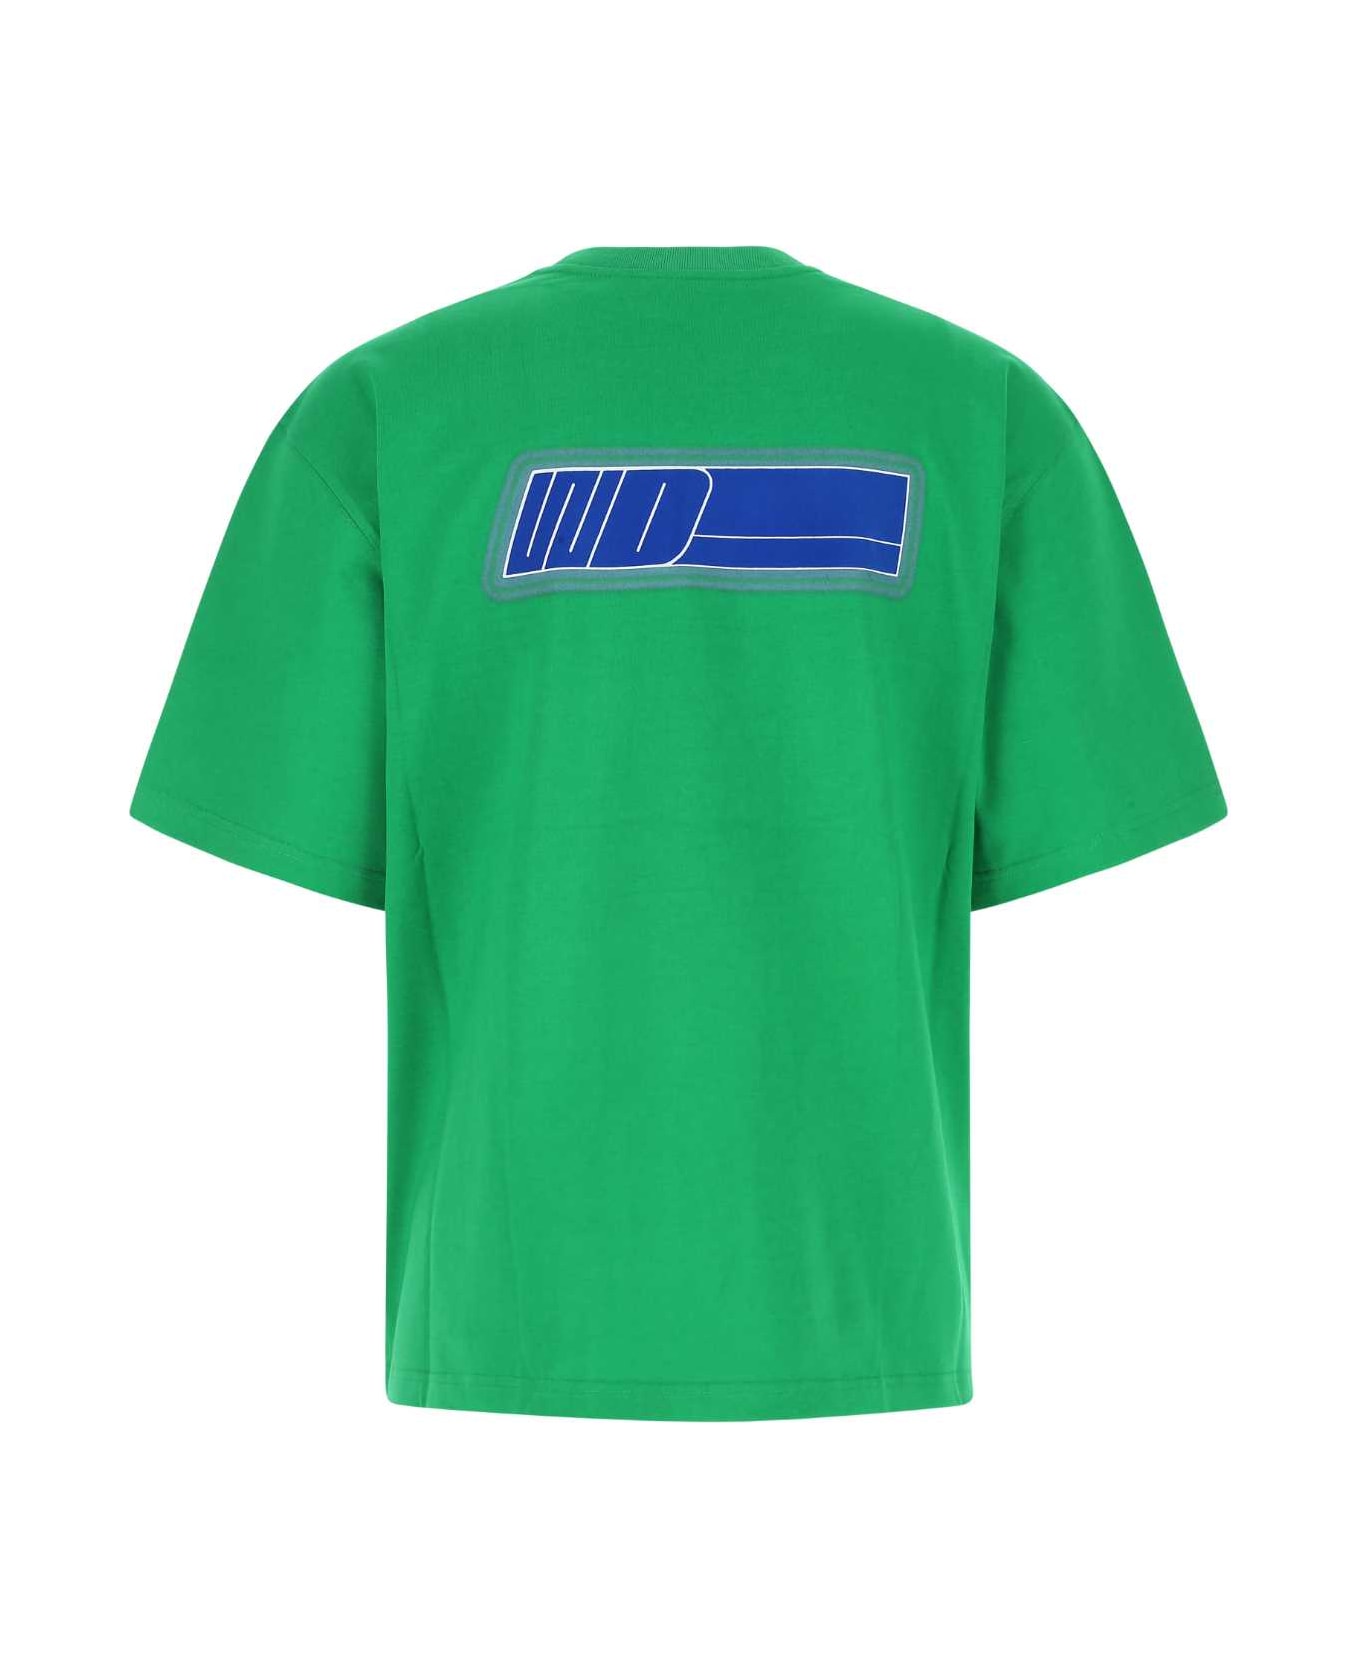 WE11 DONE Grass Green Cotton Oversize T-shirt - GREEN